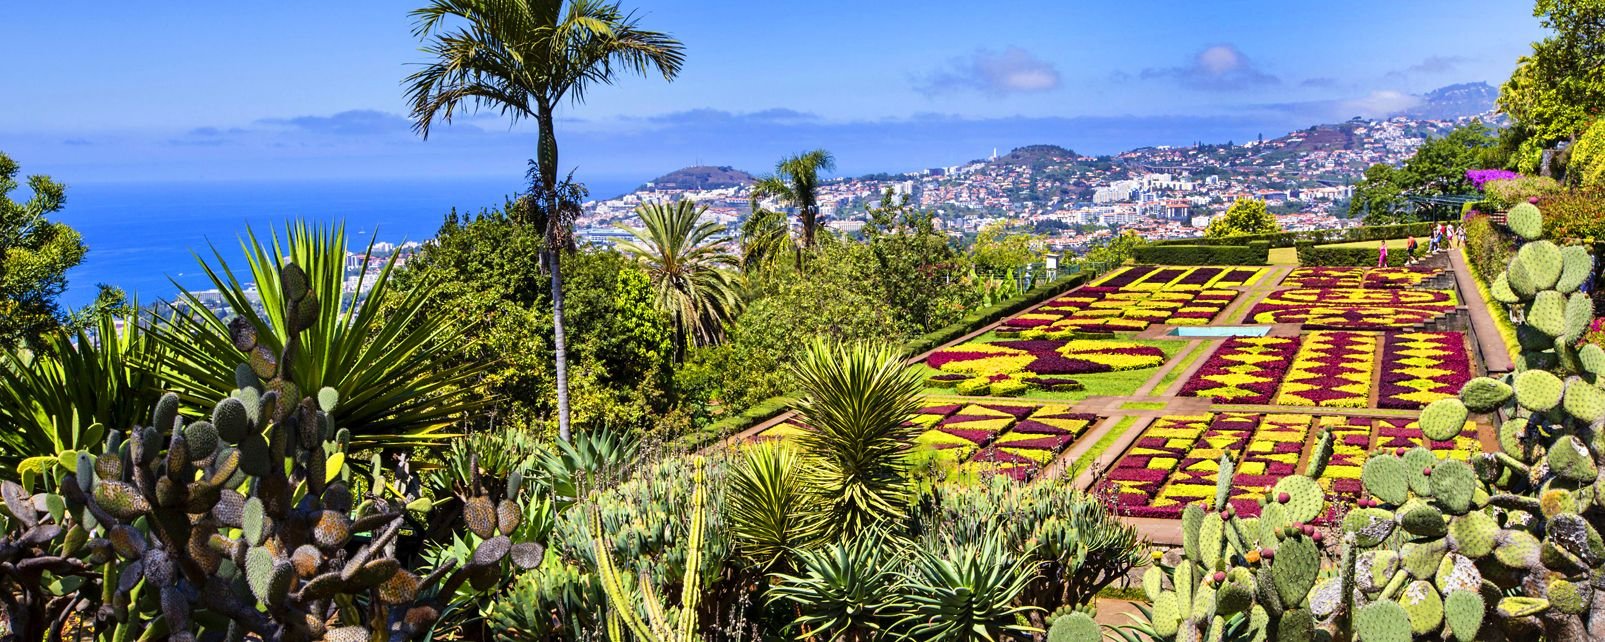 Der botanische Garten von Funchal - Madeira - Portugal